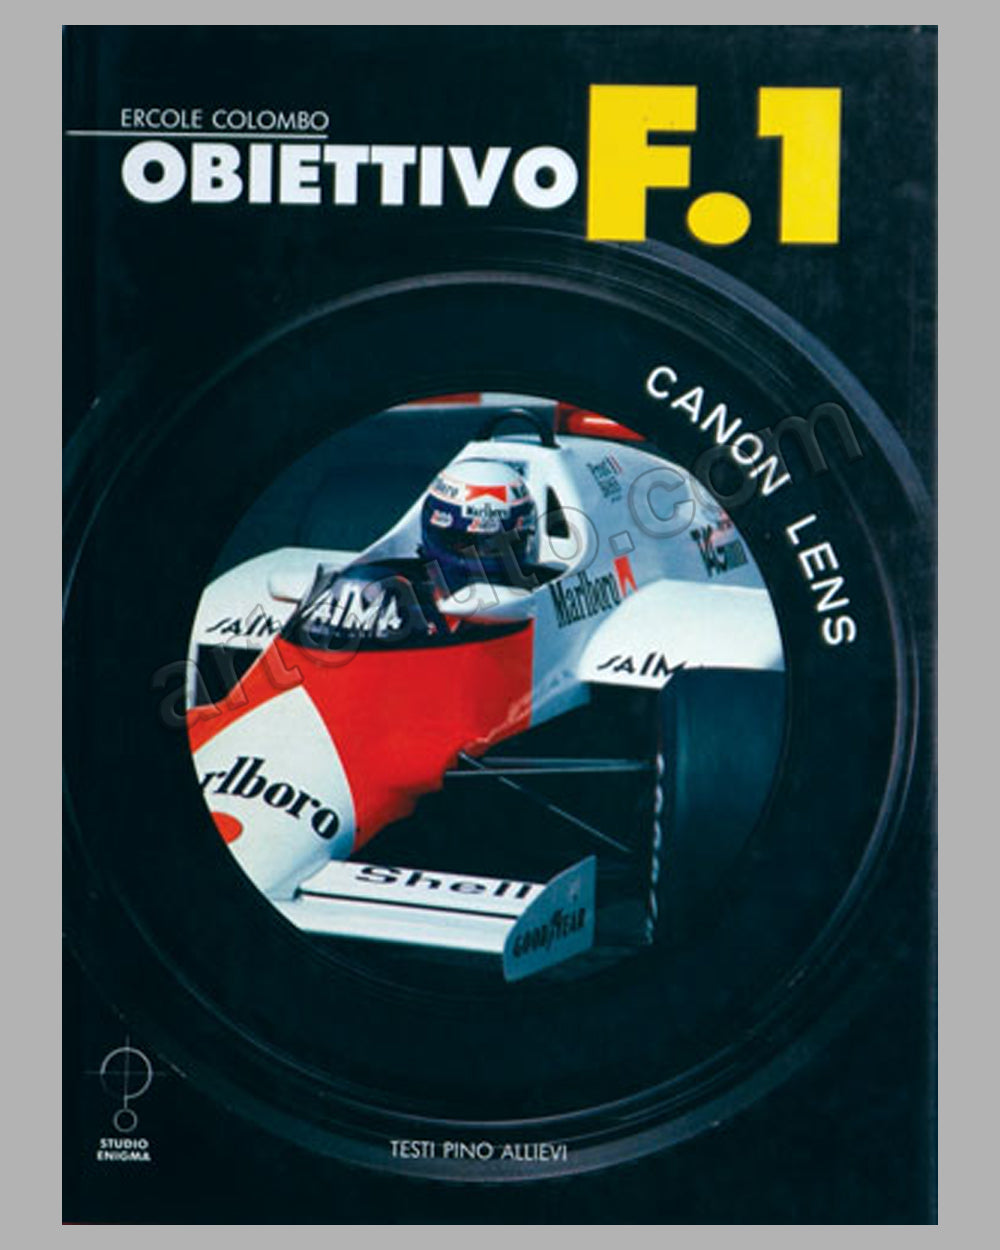 1985 - Obiettivo F1 book by E. Colombo